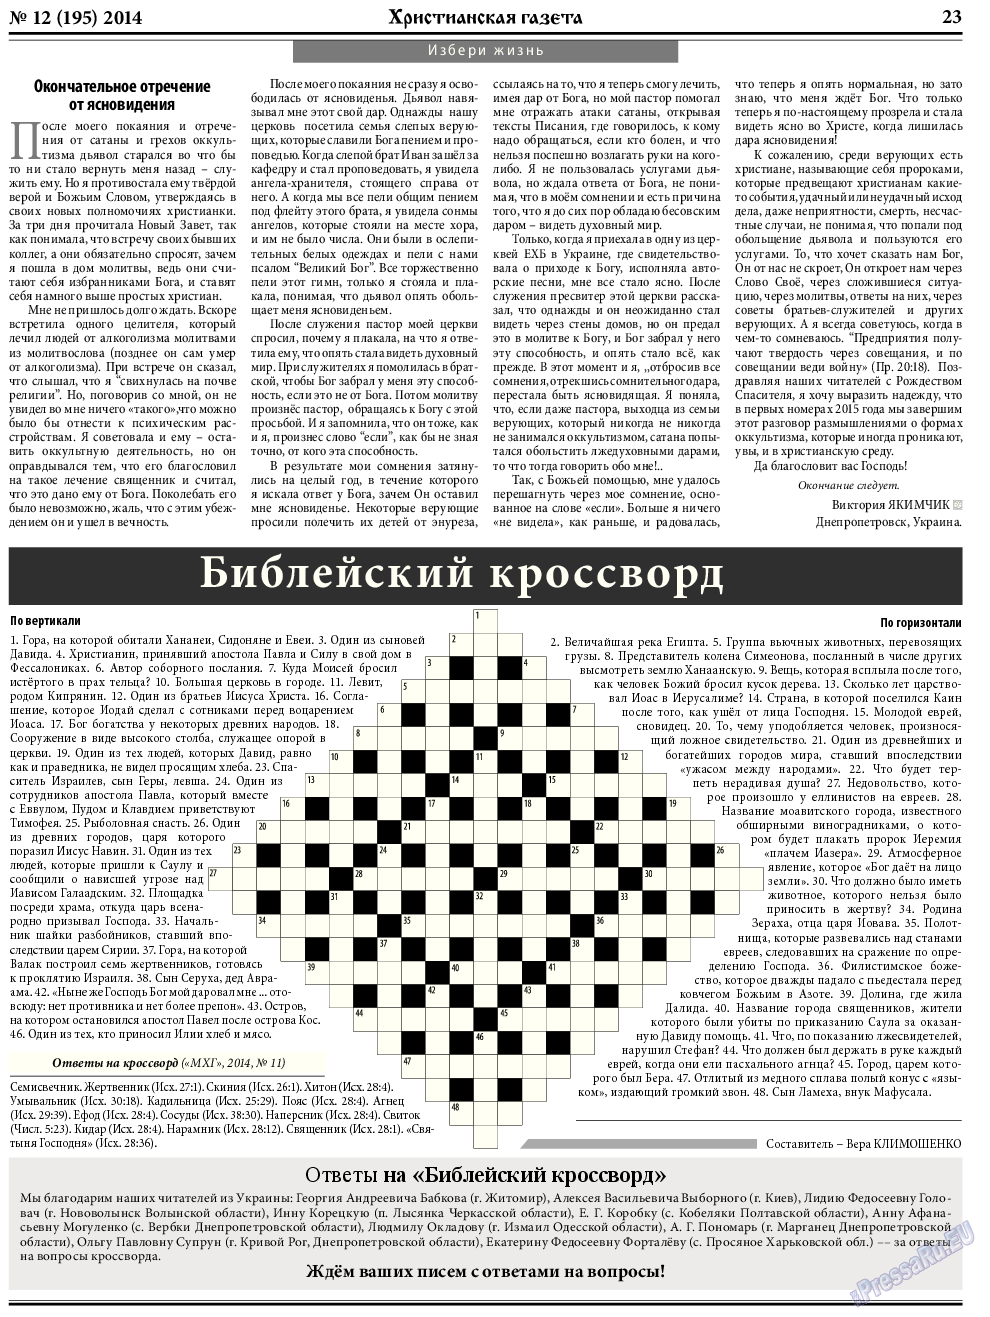 Христианская газета, газета. 2014 №12 стр.31